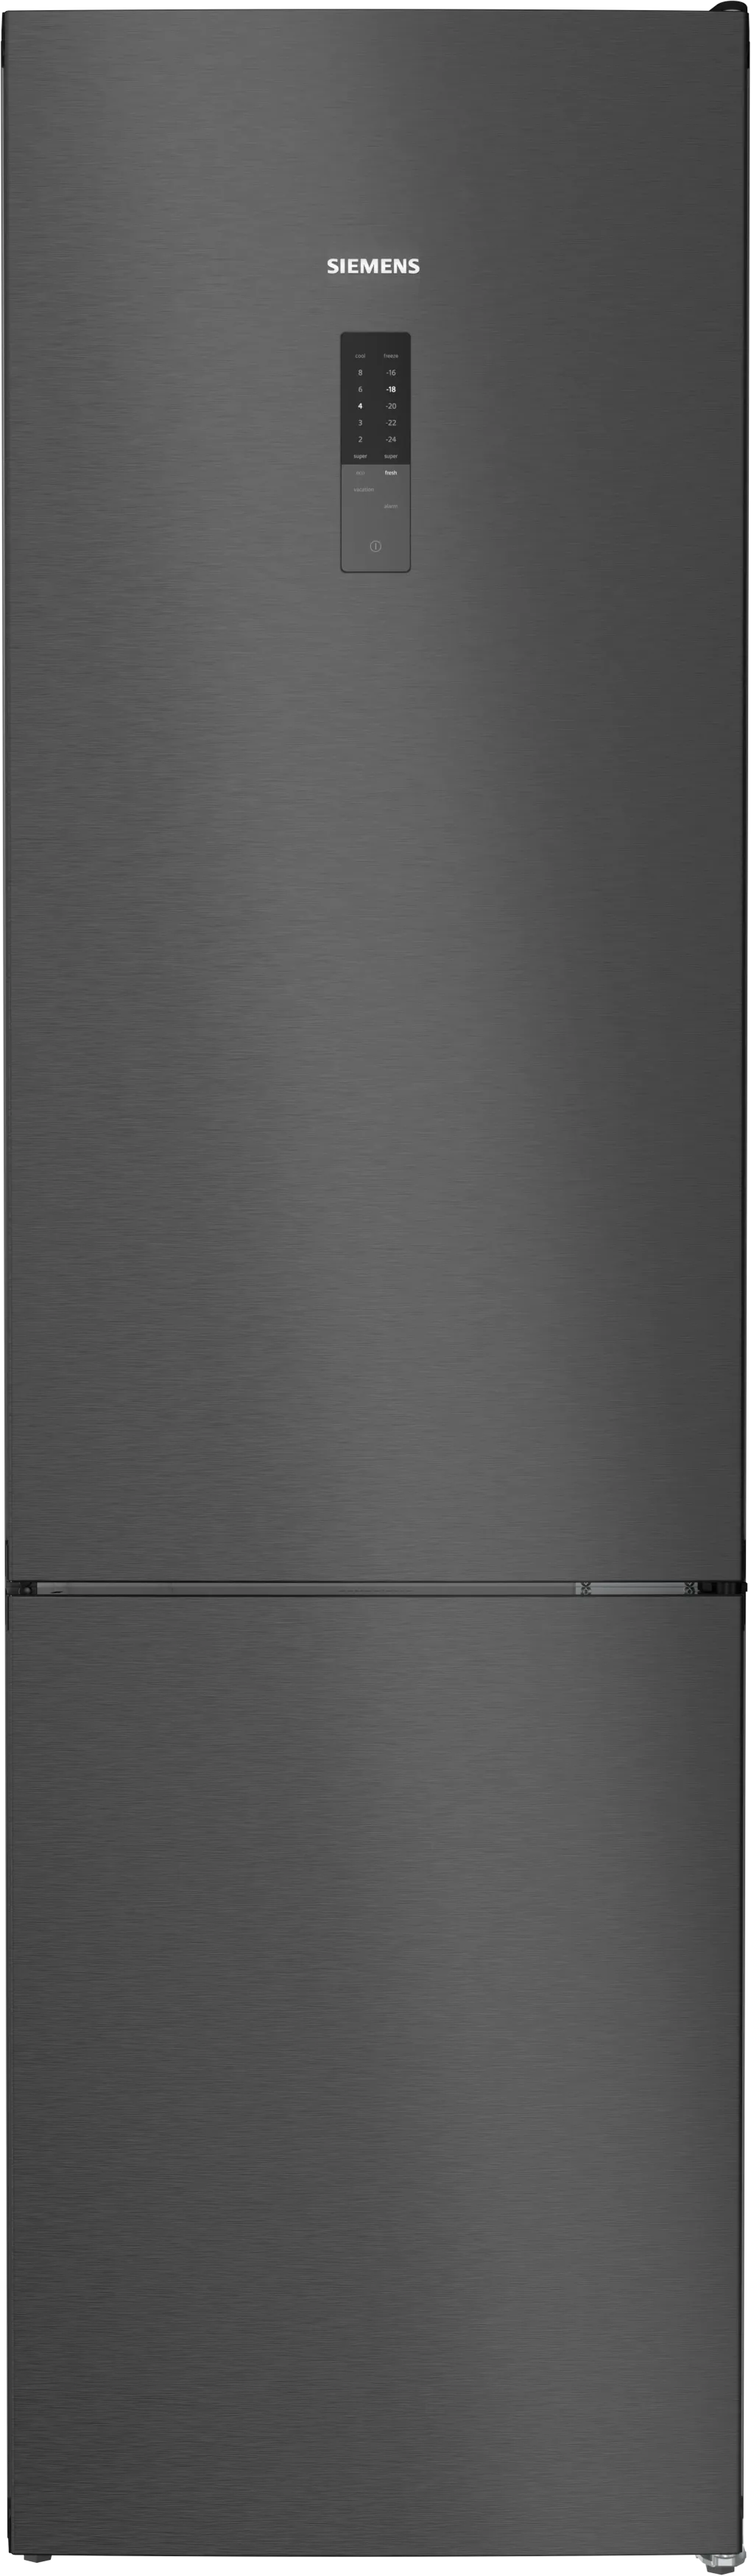 iQ300 Freistehende Kühl-Gefrier-Kombination mit Gefrierbereich unten 203 x 60 cm BlackSteel 